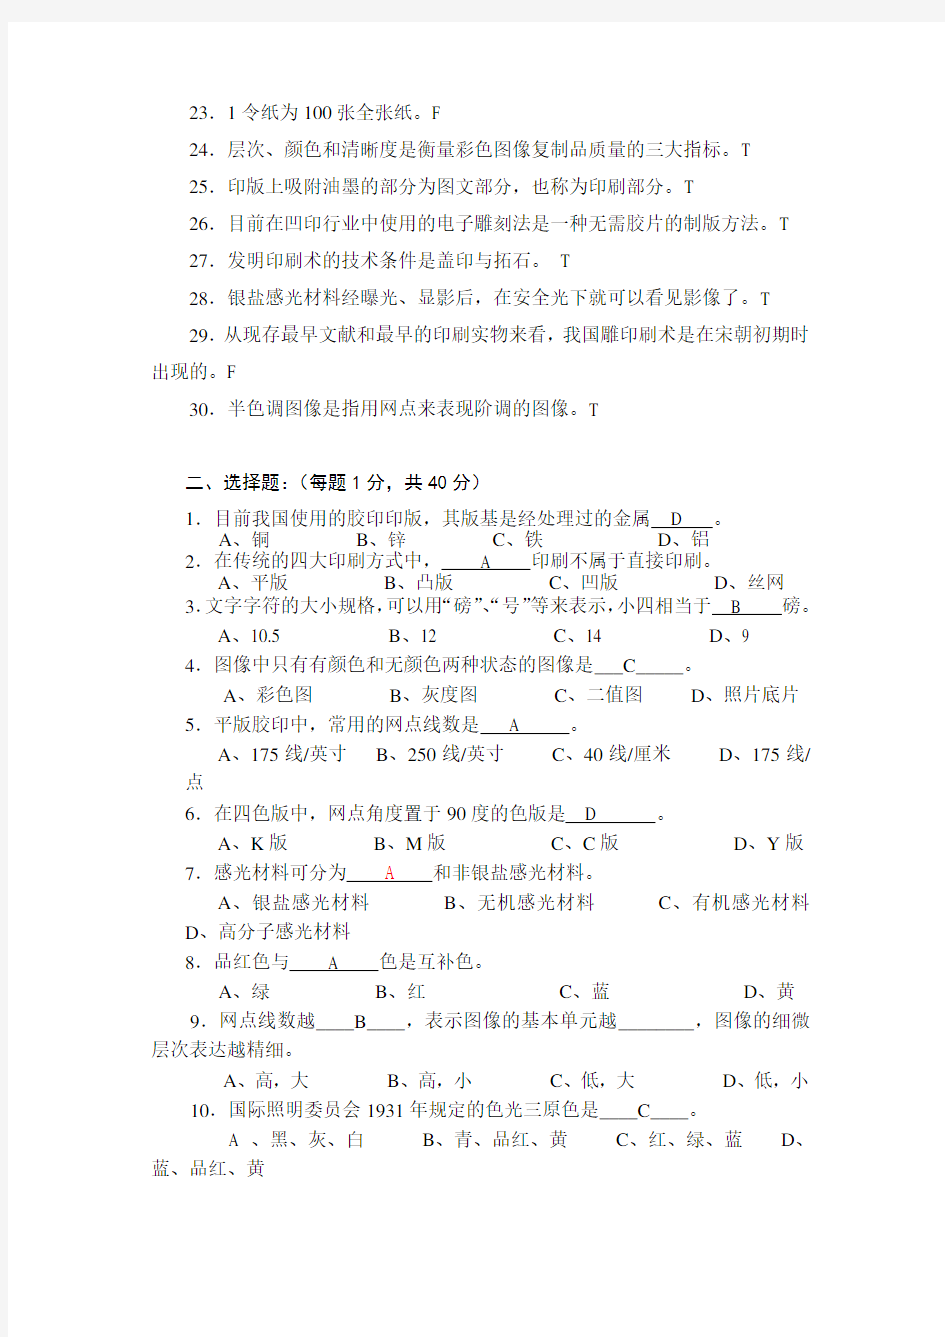 上海版专《印刷概论》试卷及答案